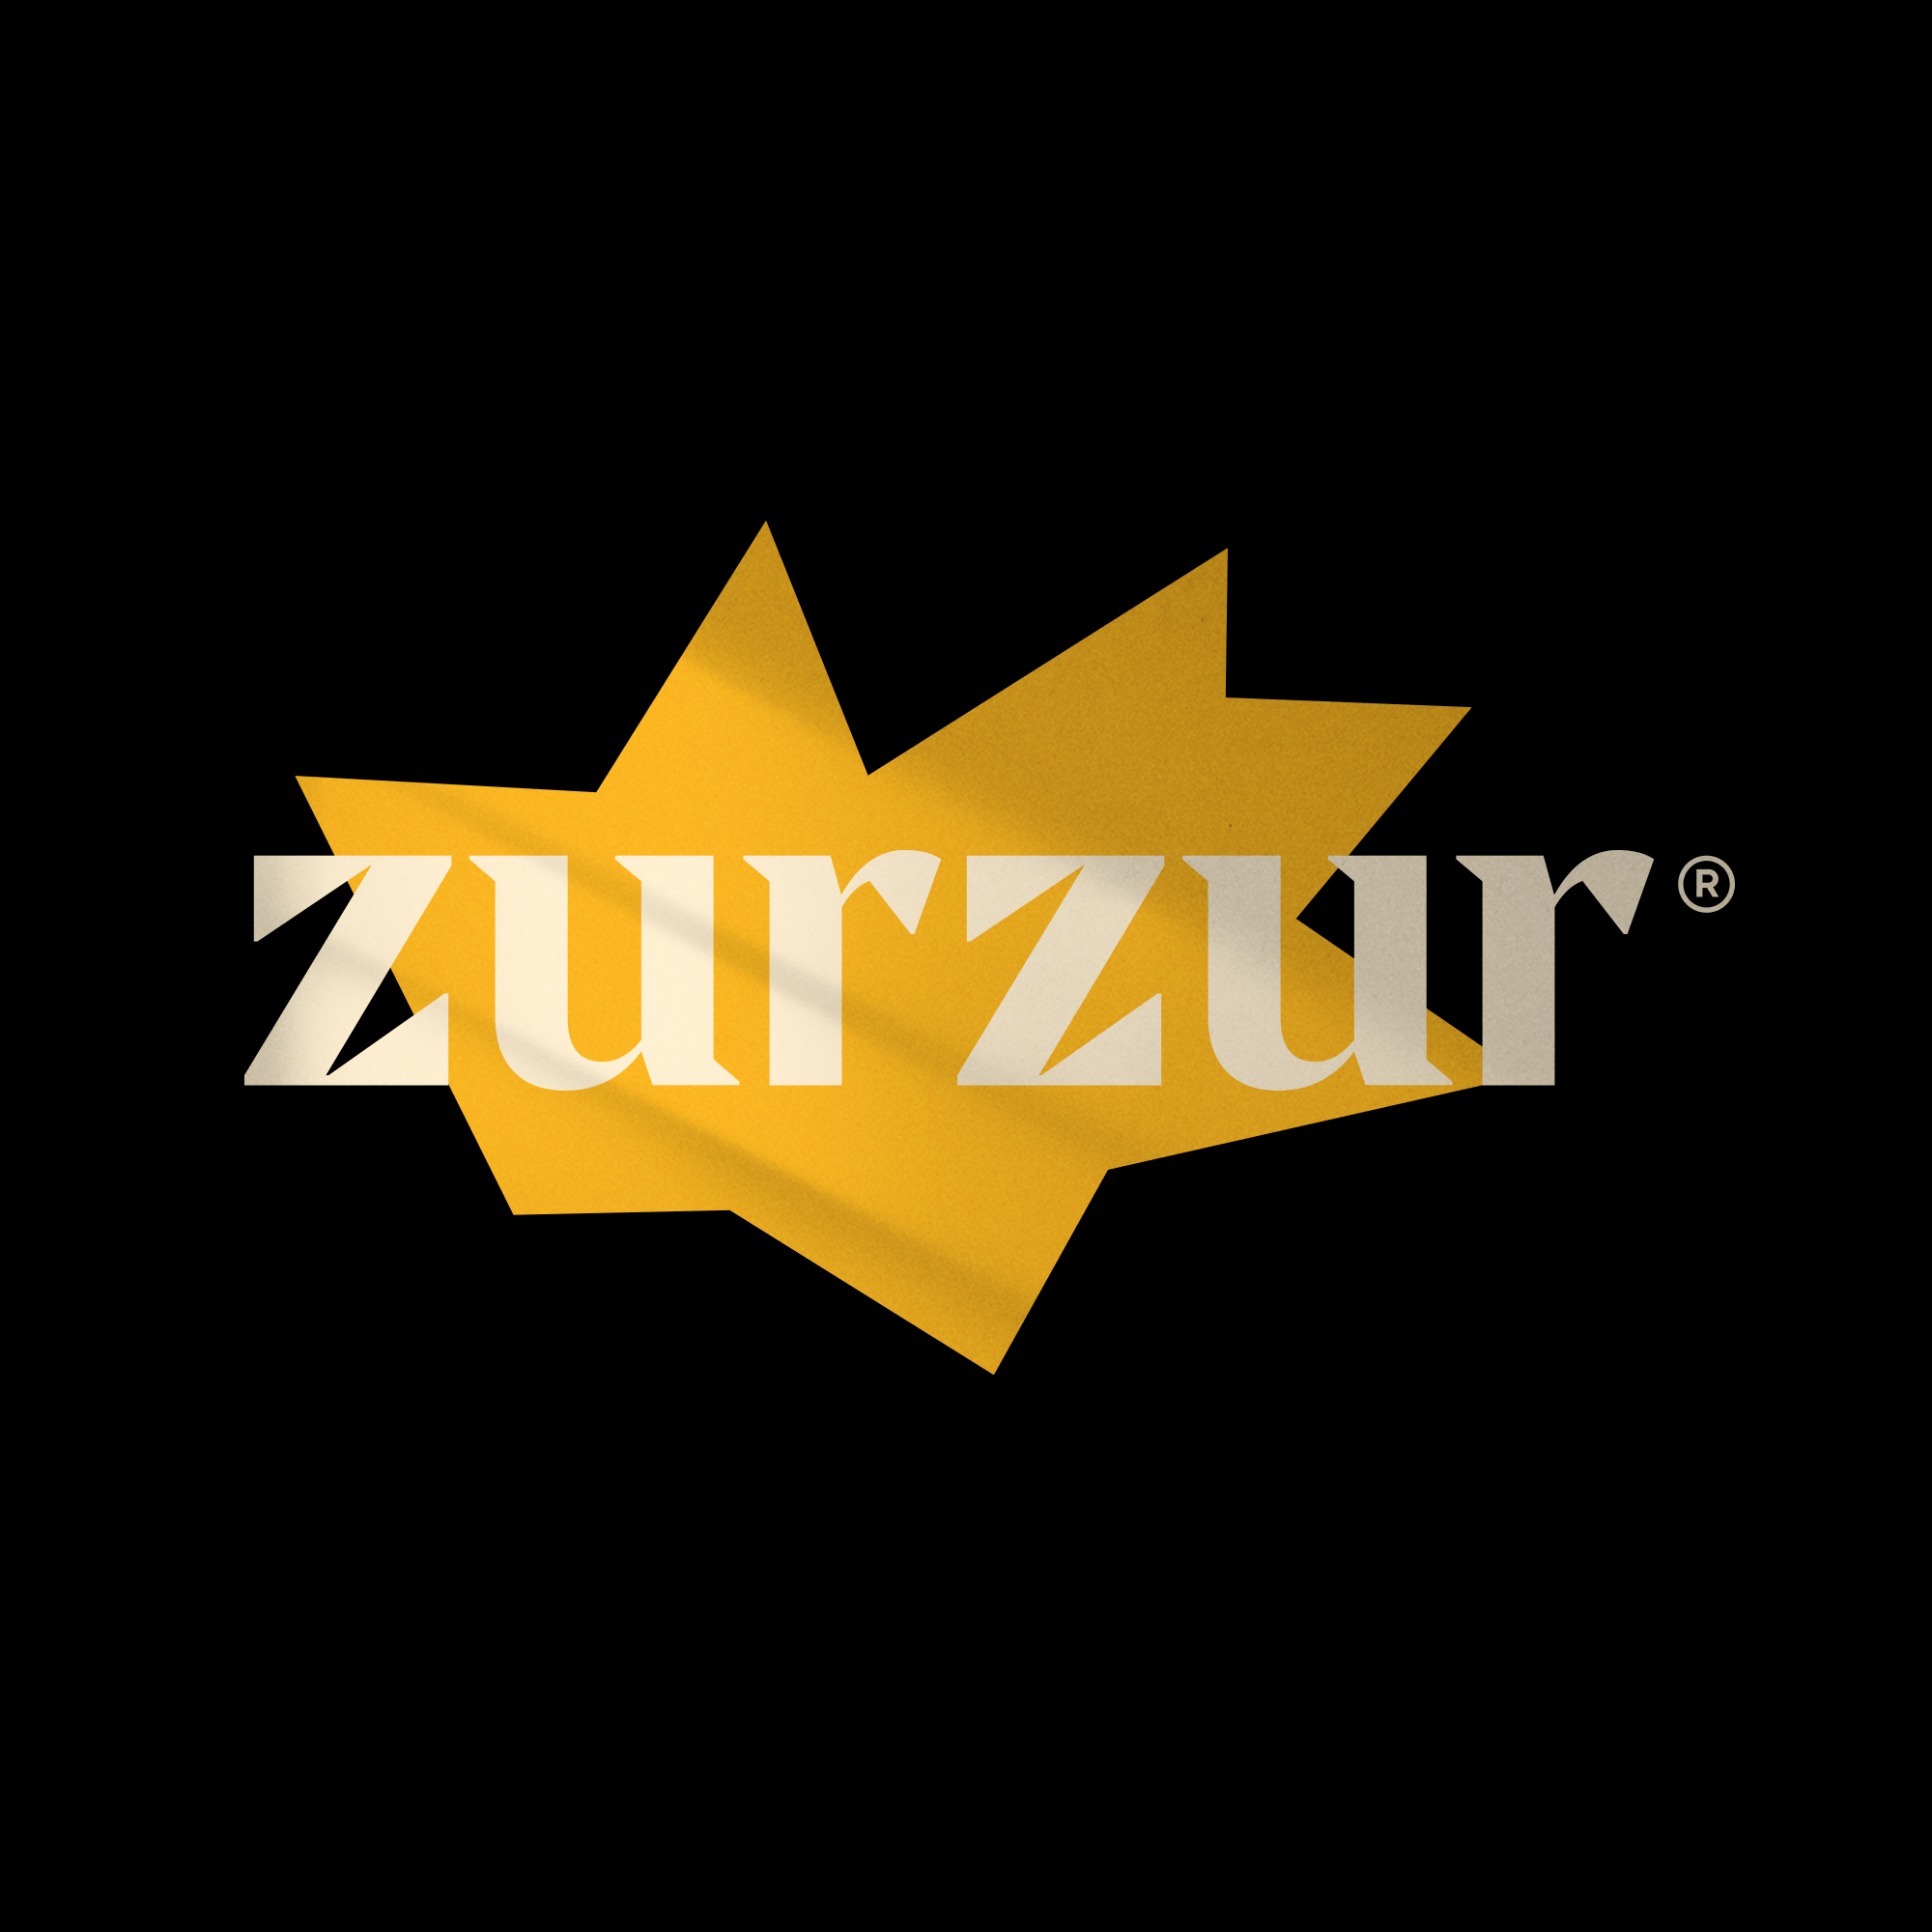 Zurzur Brand Identity Designed by Pape